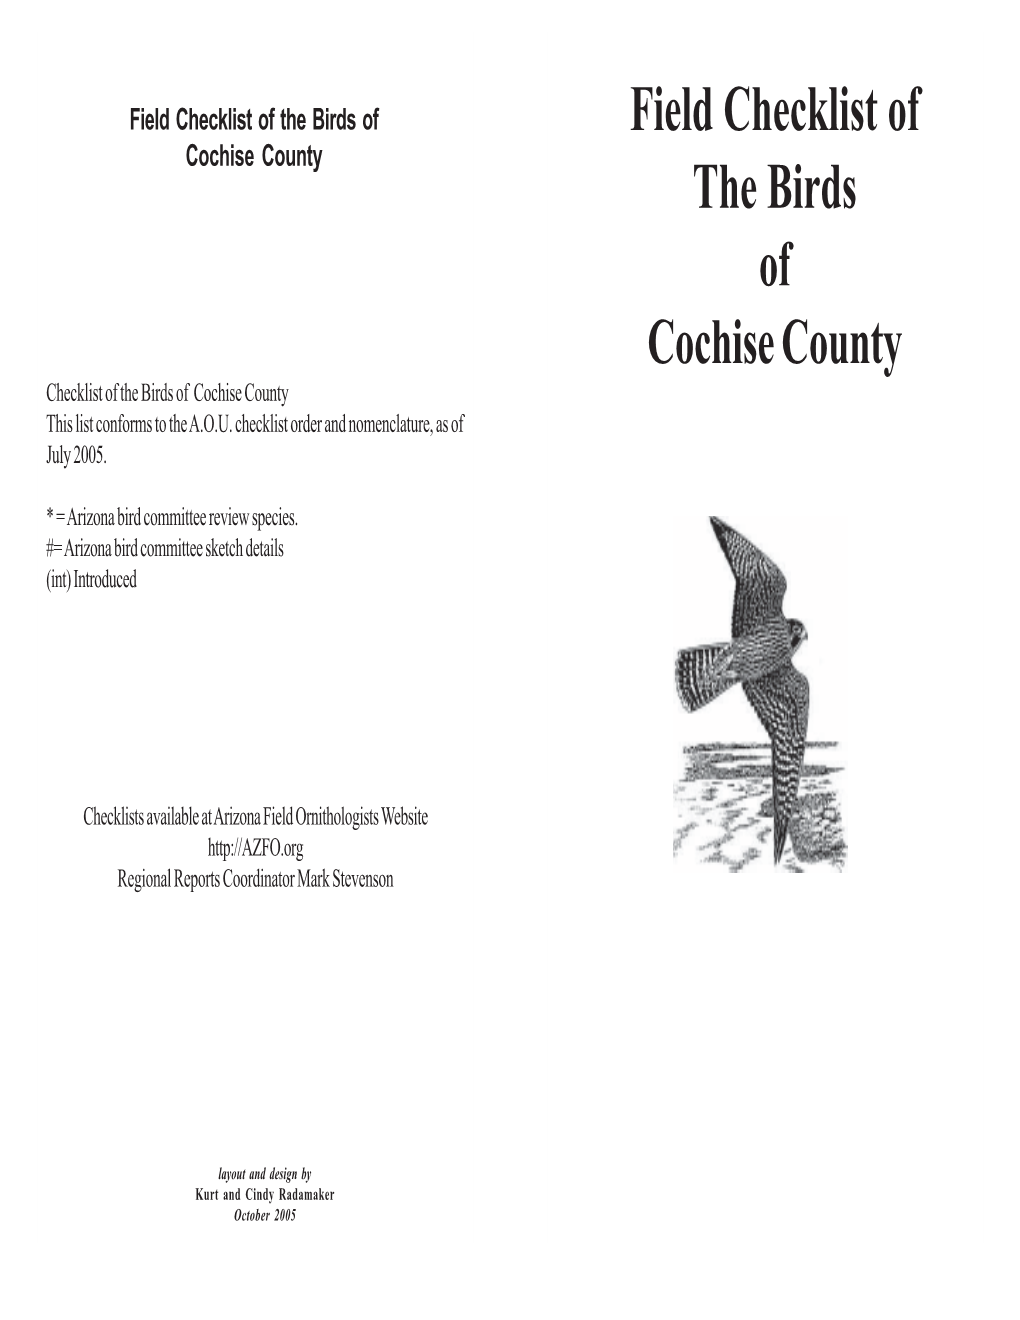 Cochise County Field Checklist